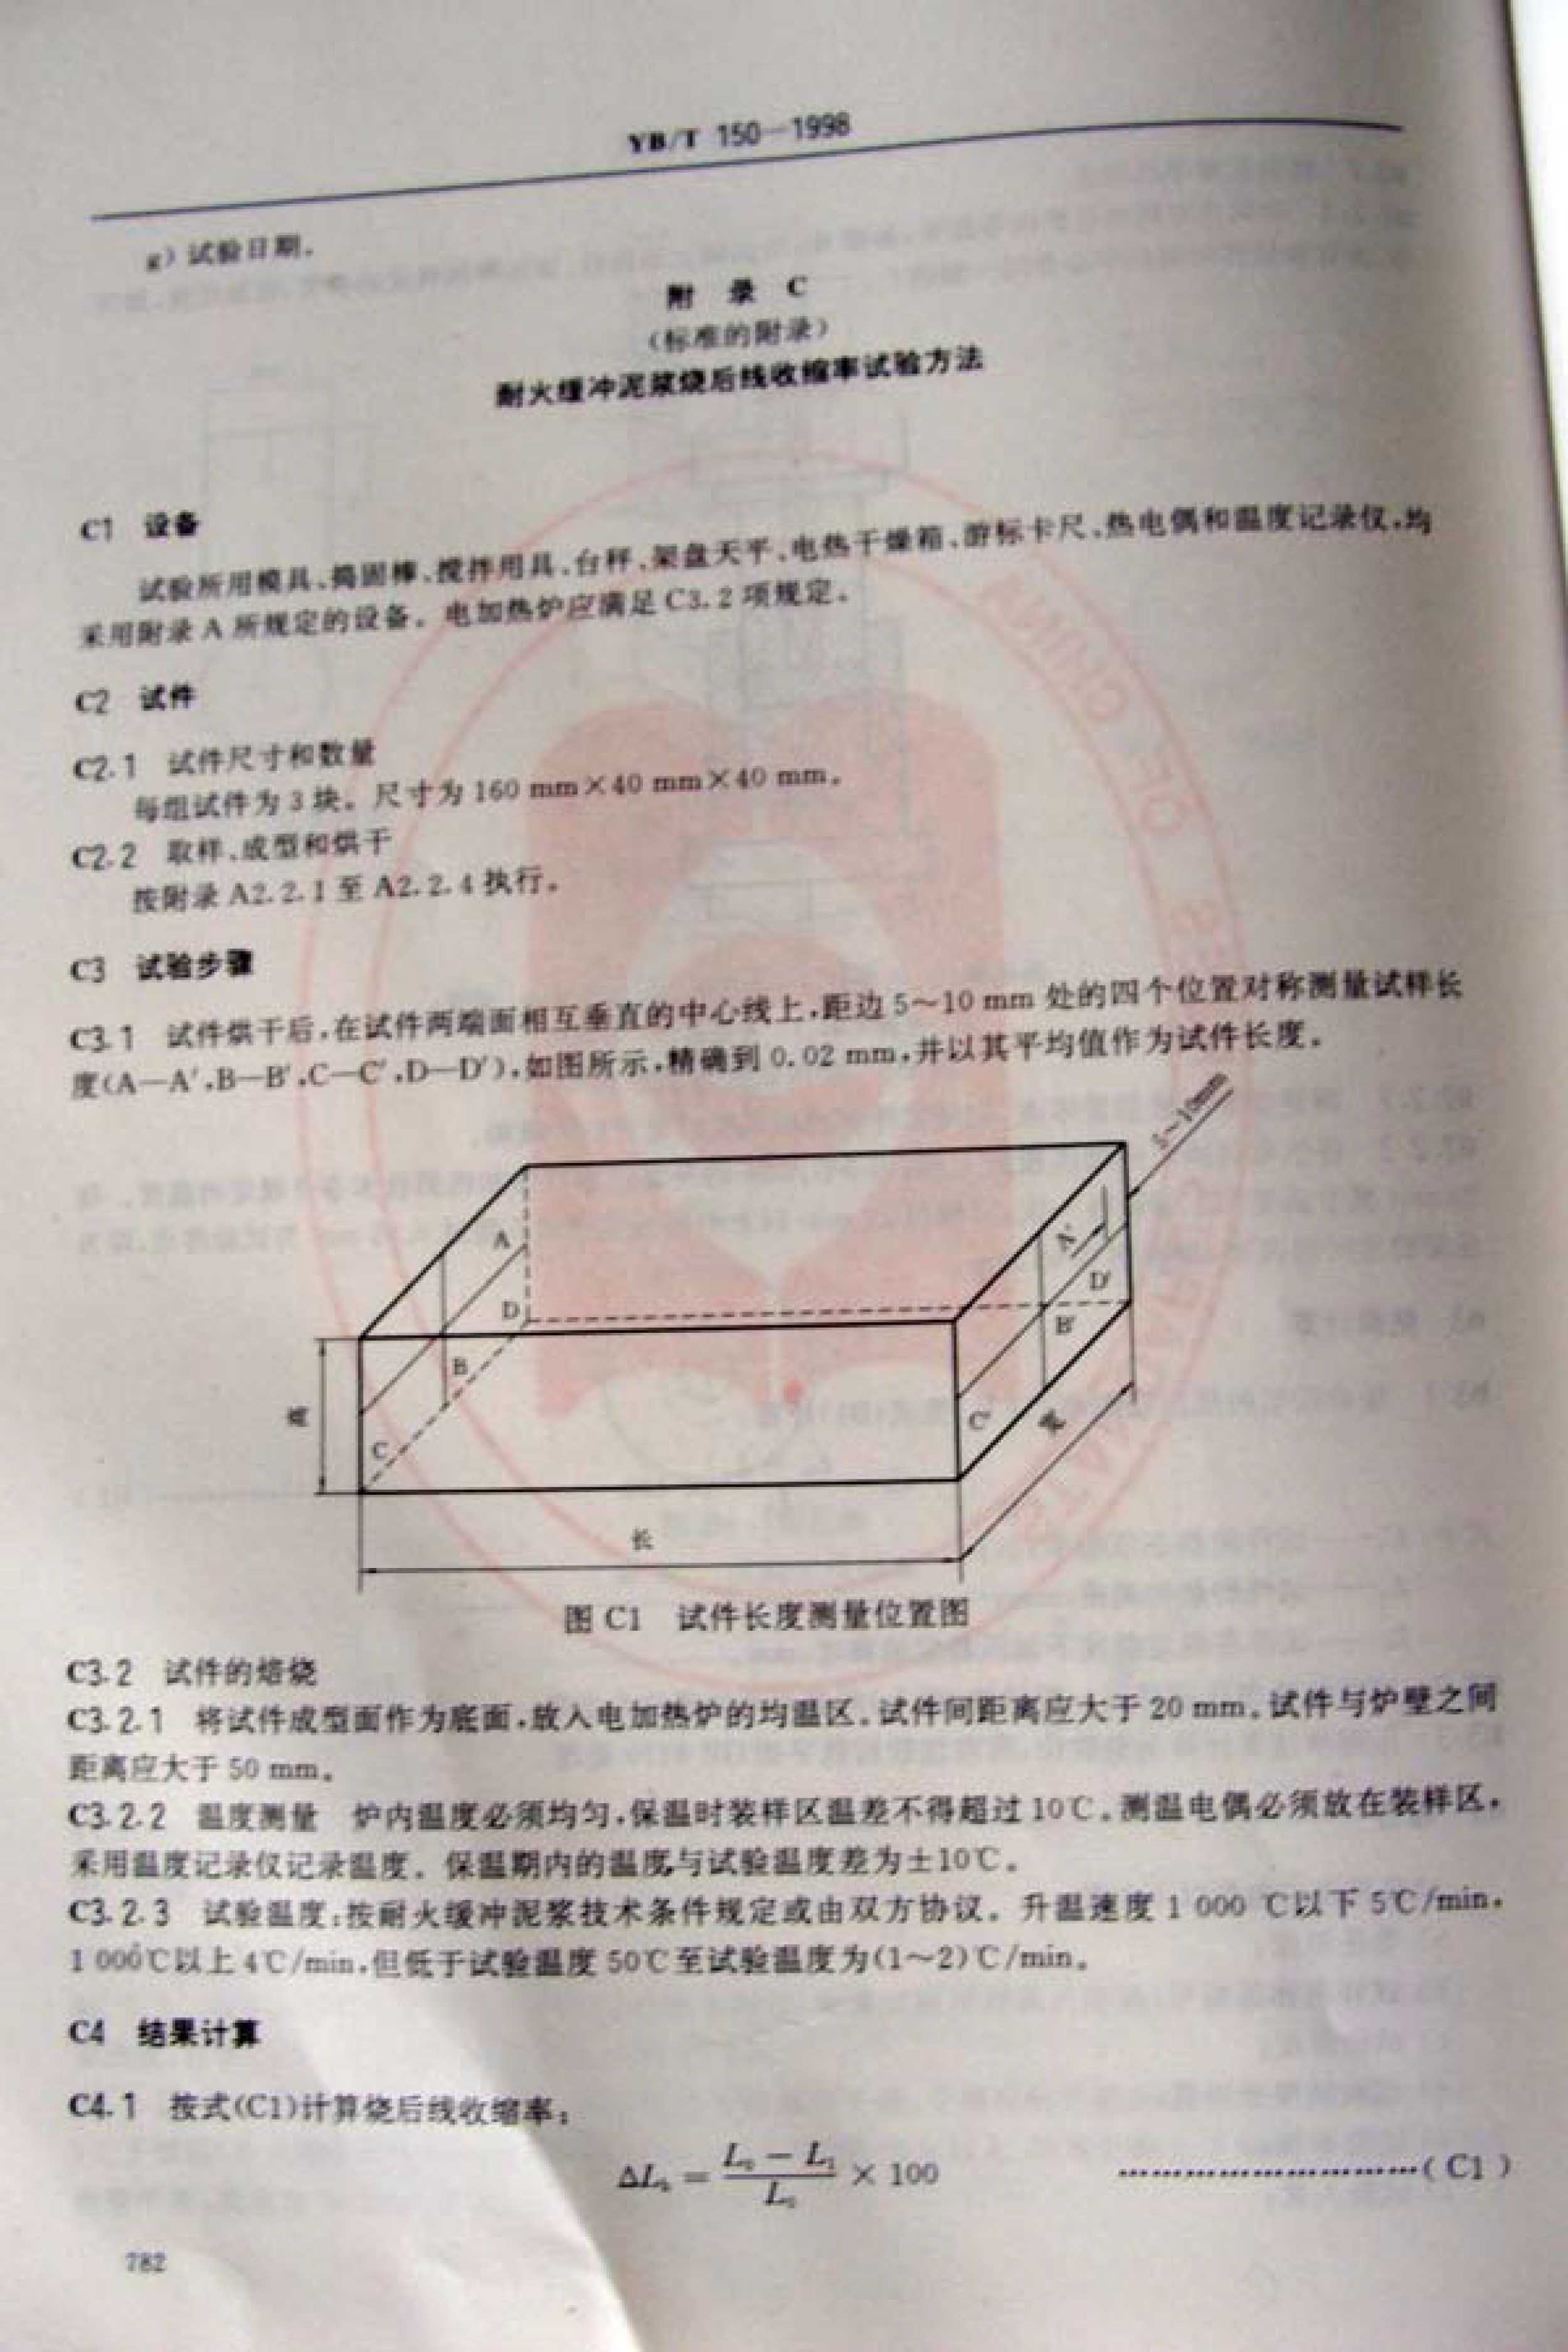 耐火缓冲泥浆行业标准 YB/T 150-1998